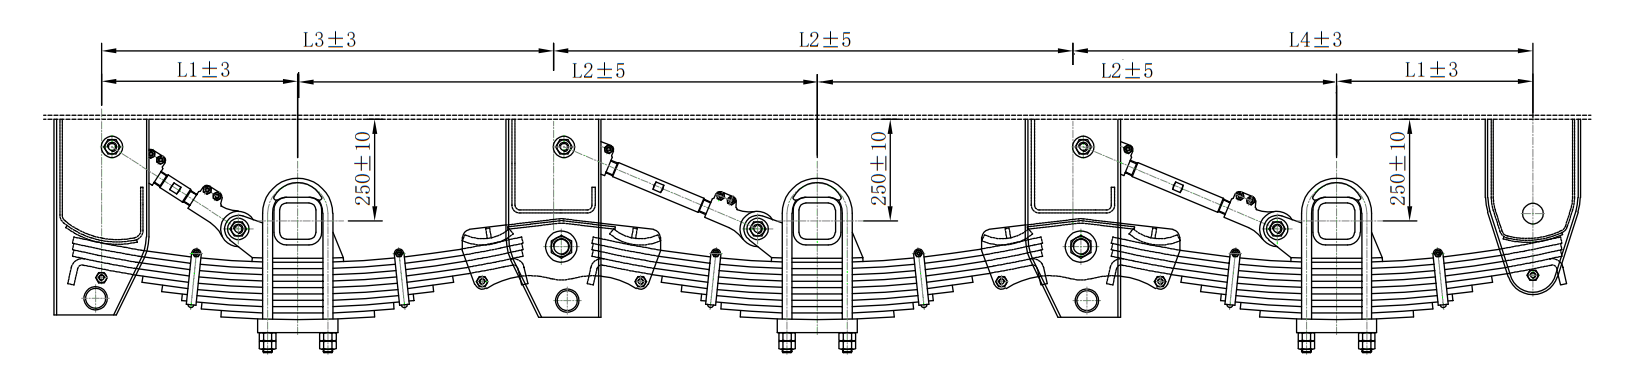 Mechanical-suspension-WD86-03-underslung